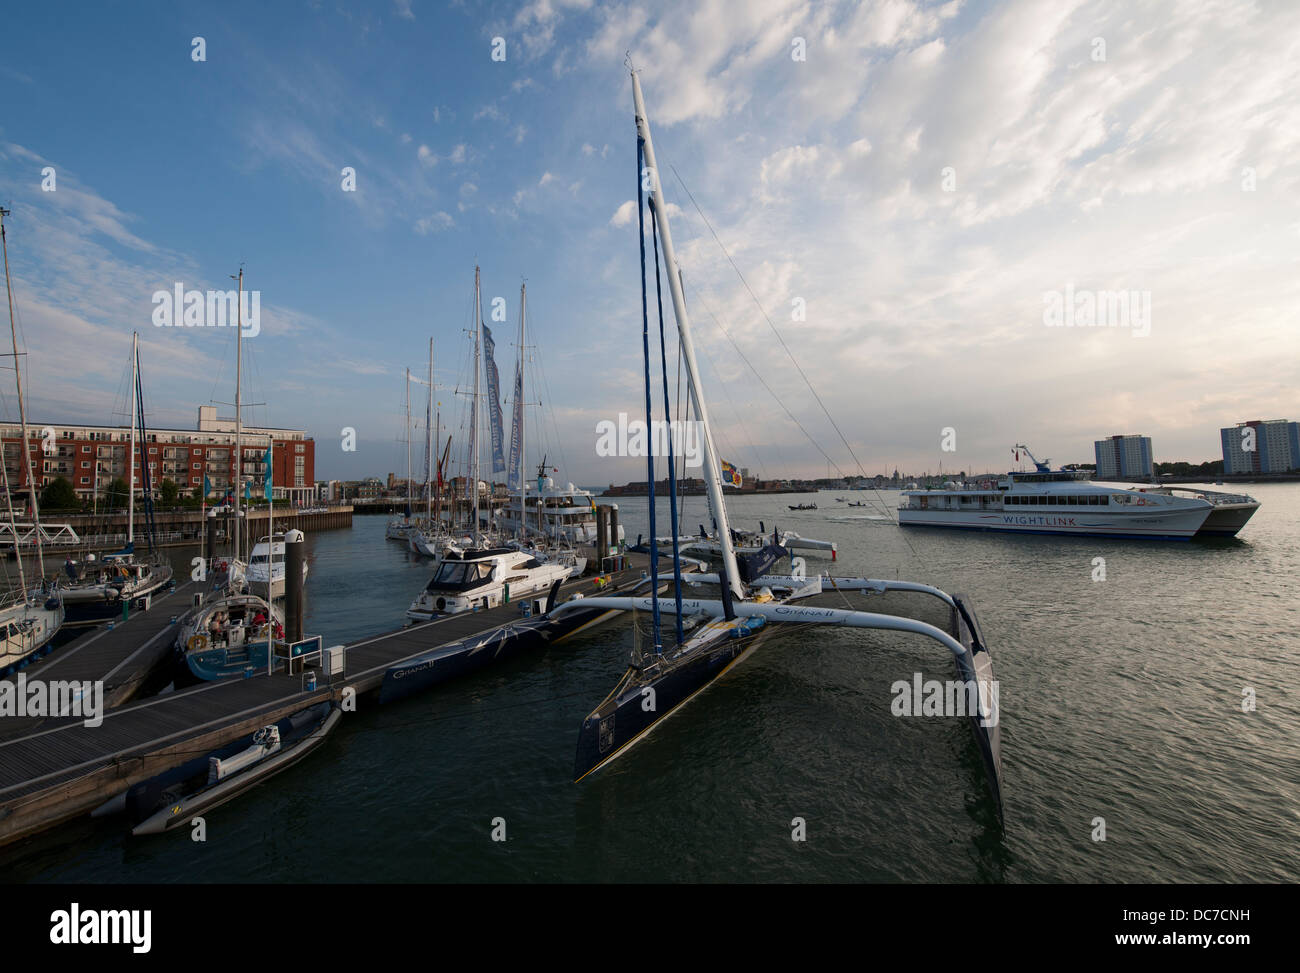 Gitana 11 moored at Gunwharf Marina, Portsmouth Harbour, Portsmouth, Hampshire, England, UK. Stock Photo